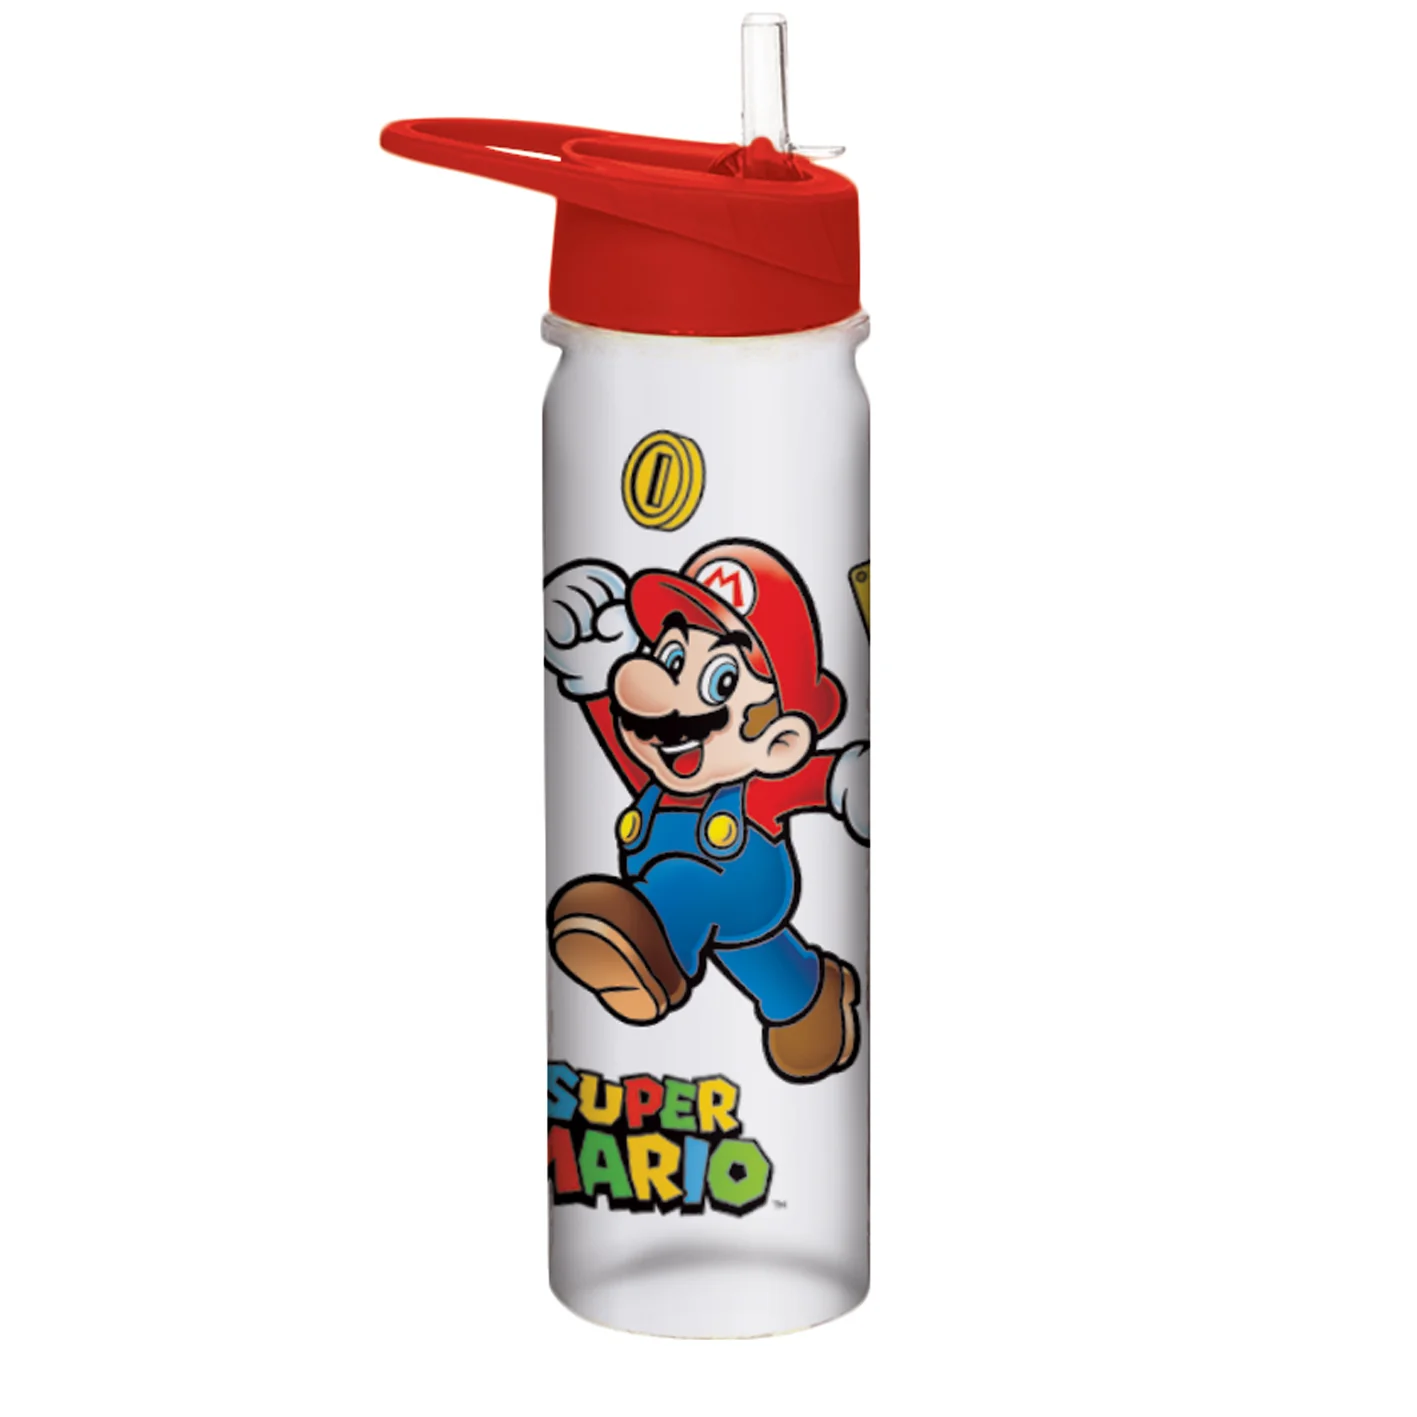 Super mario - jump - plastic bottle